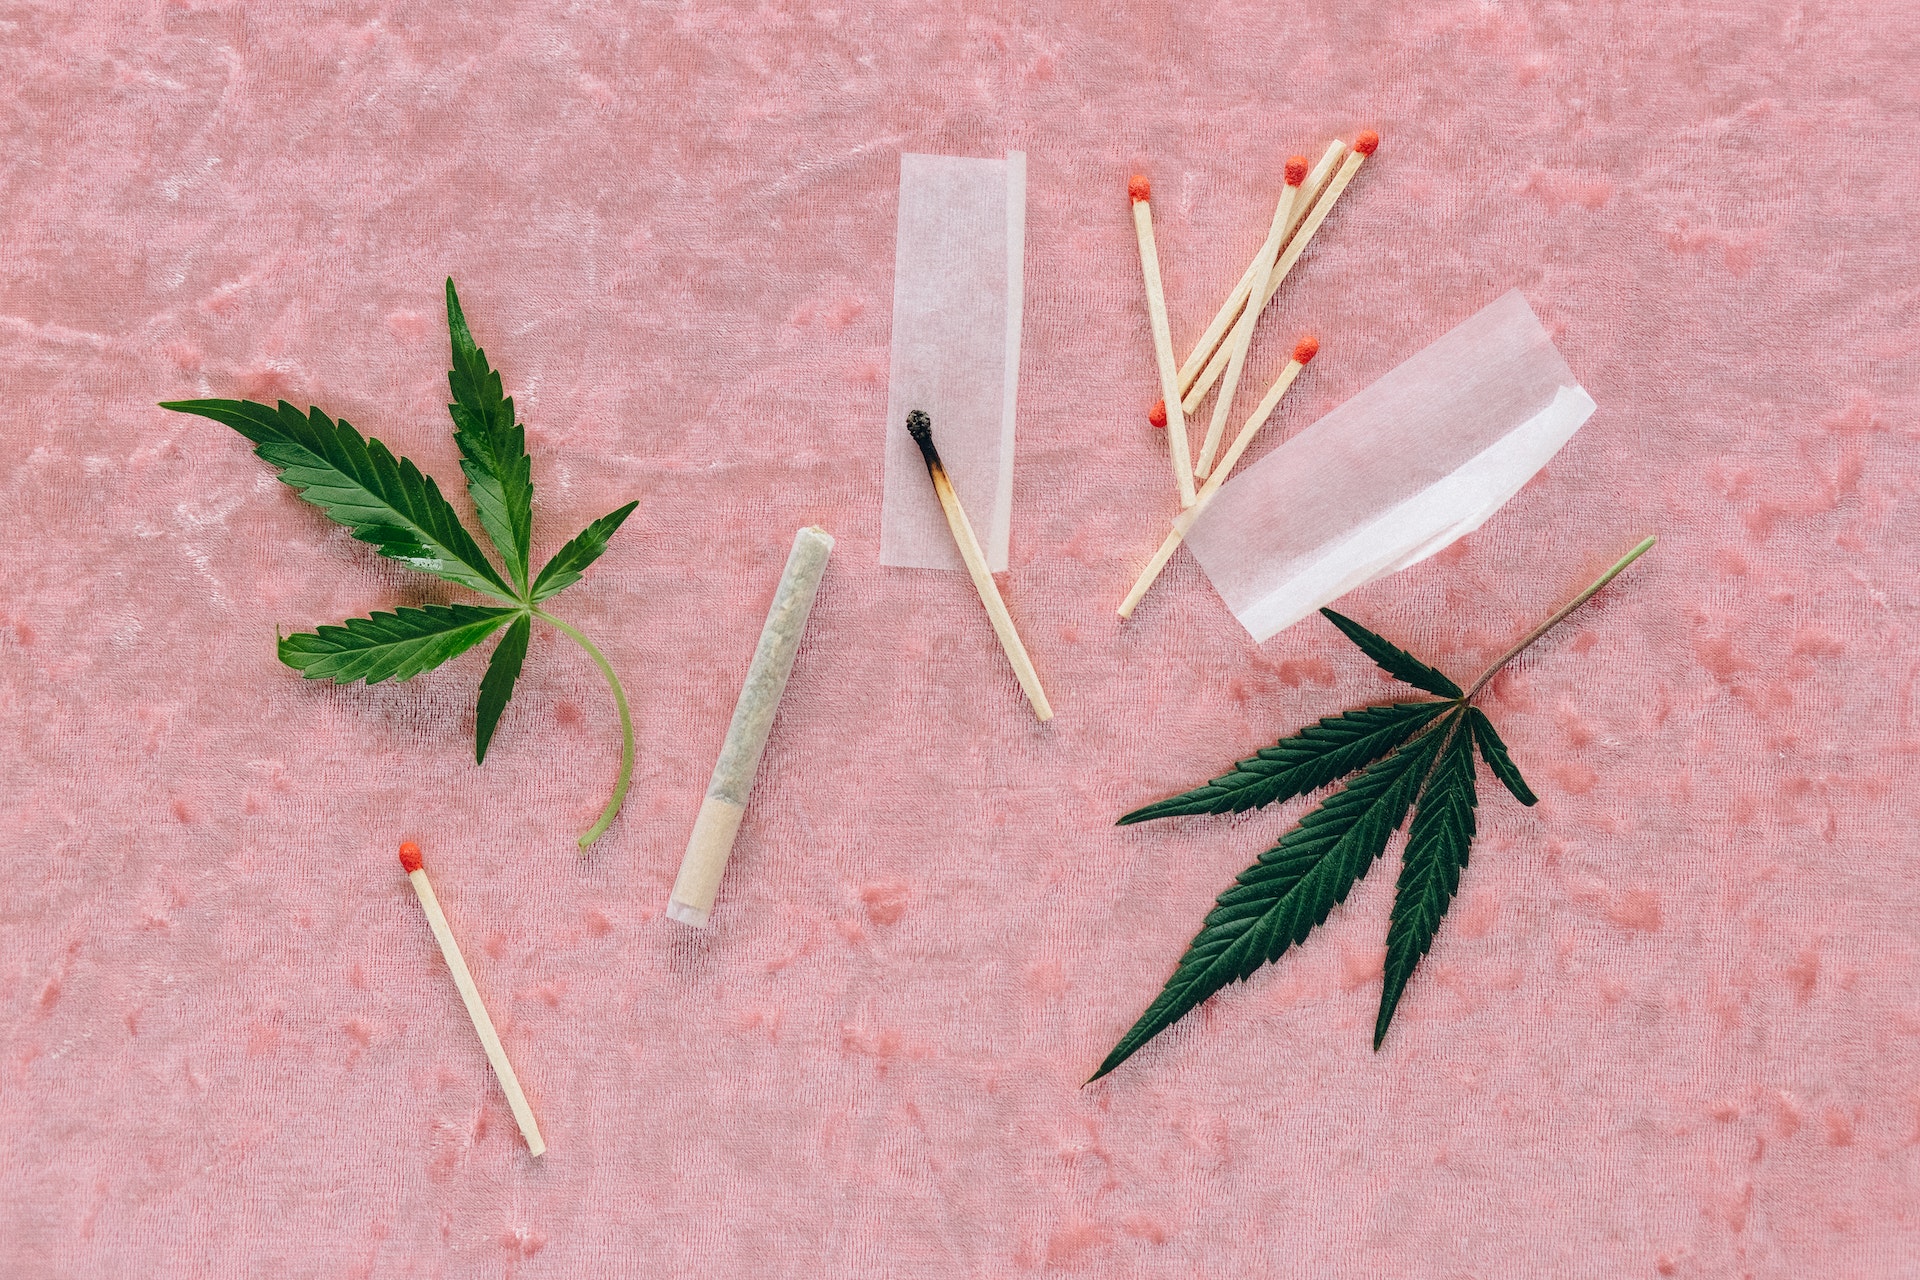 Mythen Cannabis